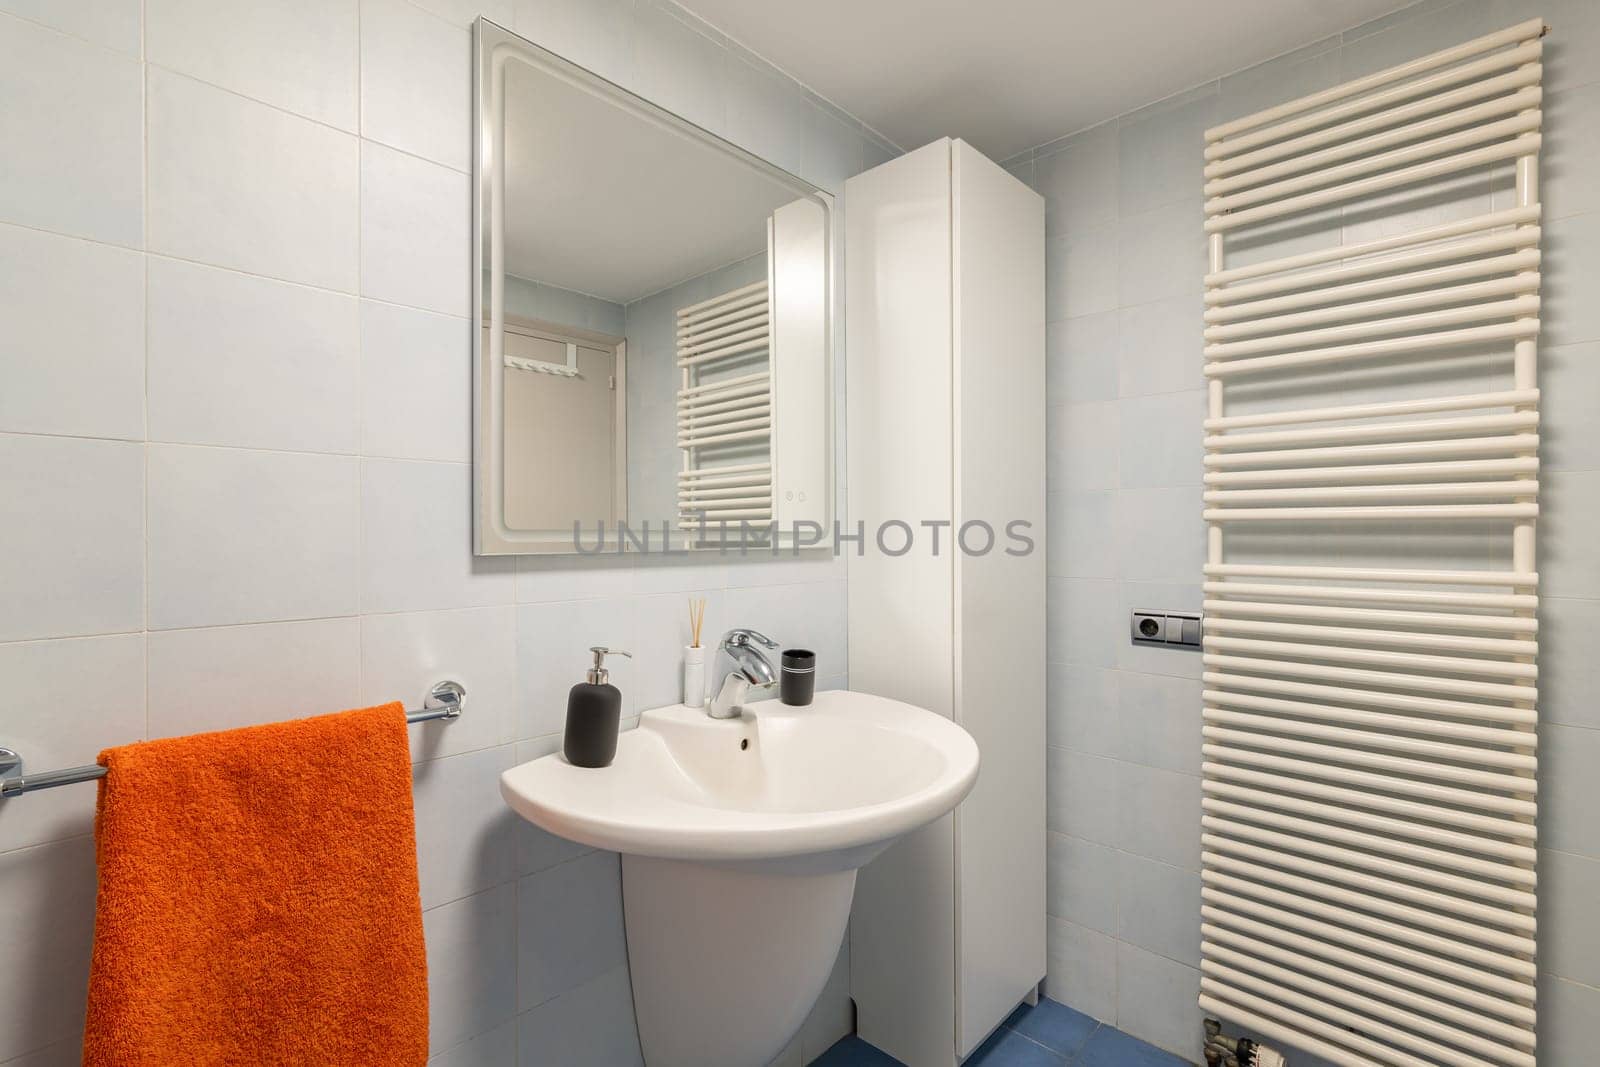 Mirror, sink and towel dryer in modern tiled bathroom by apavlin